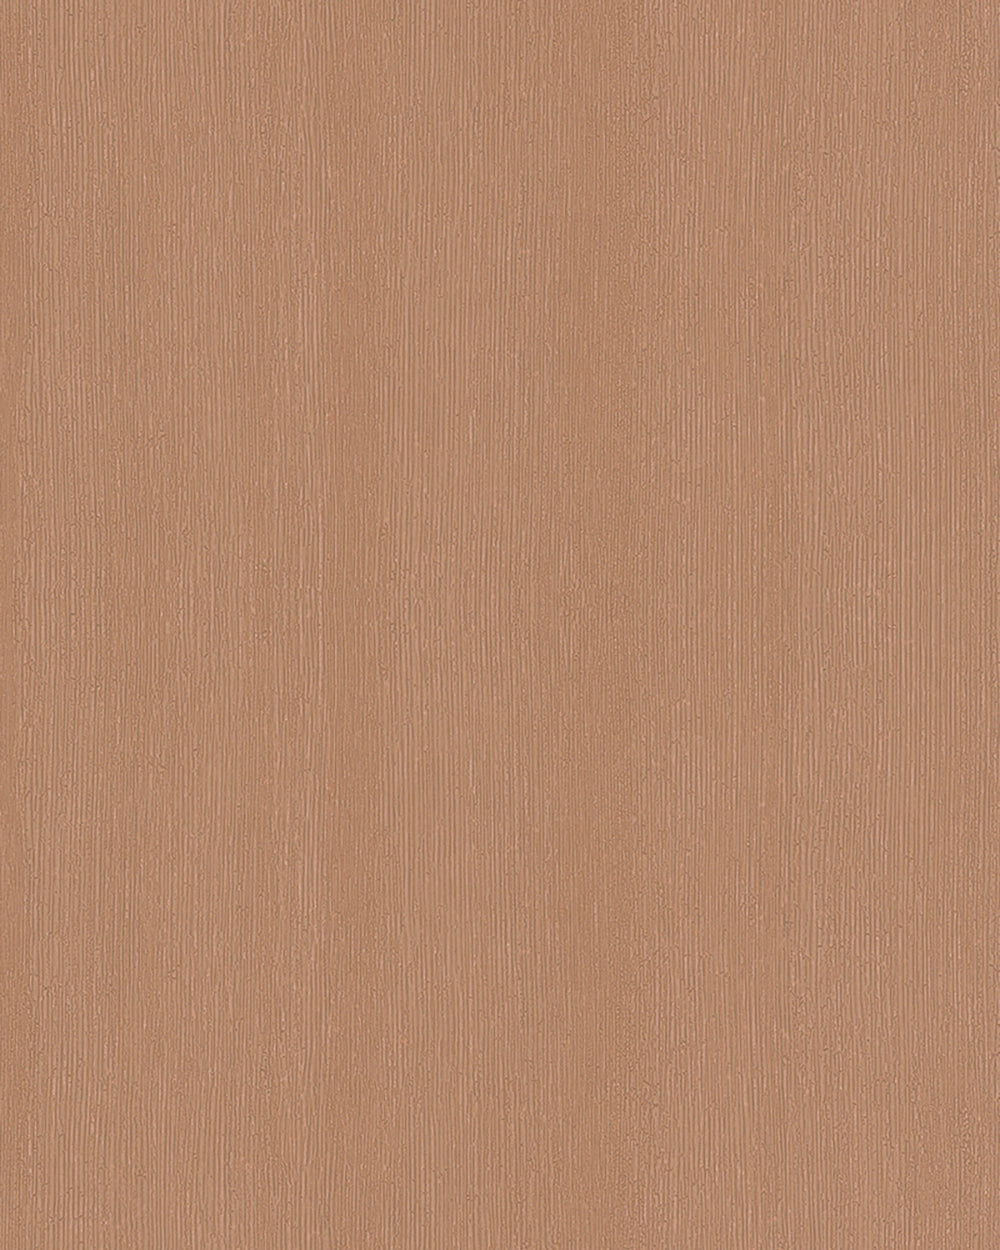 Avalon - Wood Grain plain wallpaper Marburg Roll Light Orange  31633